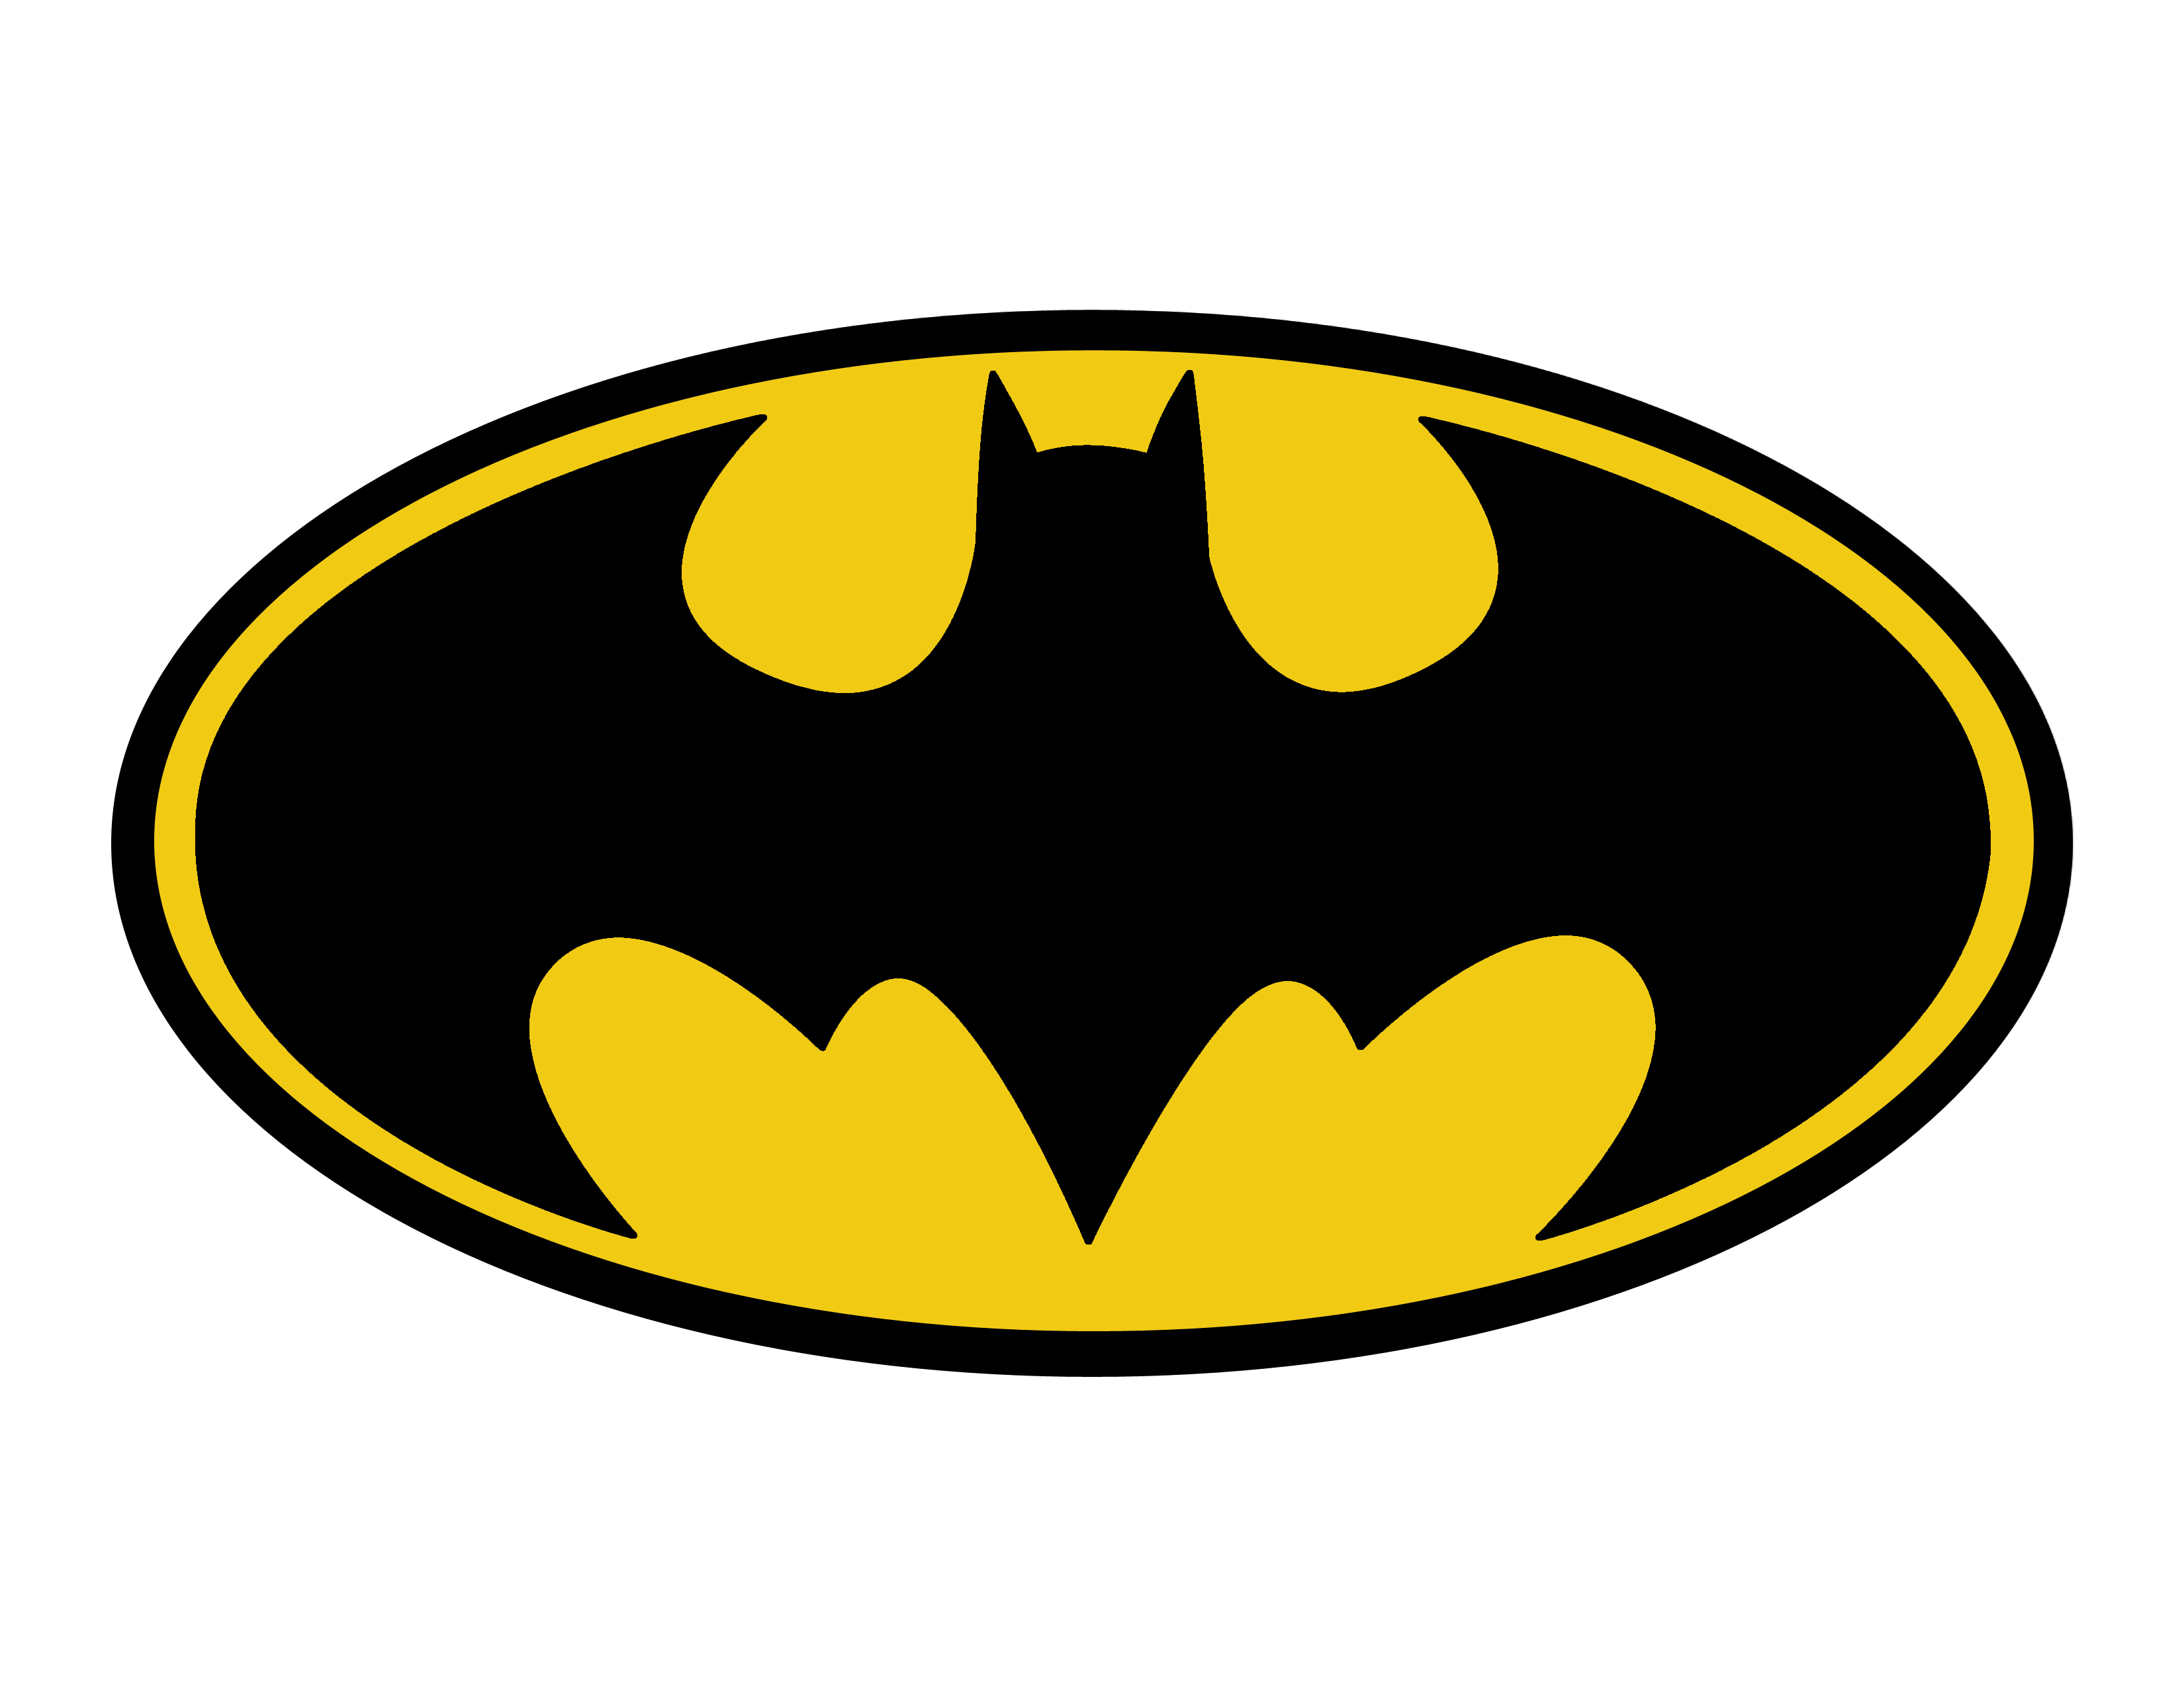 Batman, Joker, Batman Logo, PNG Transparent Images - PNG All